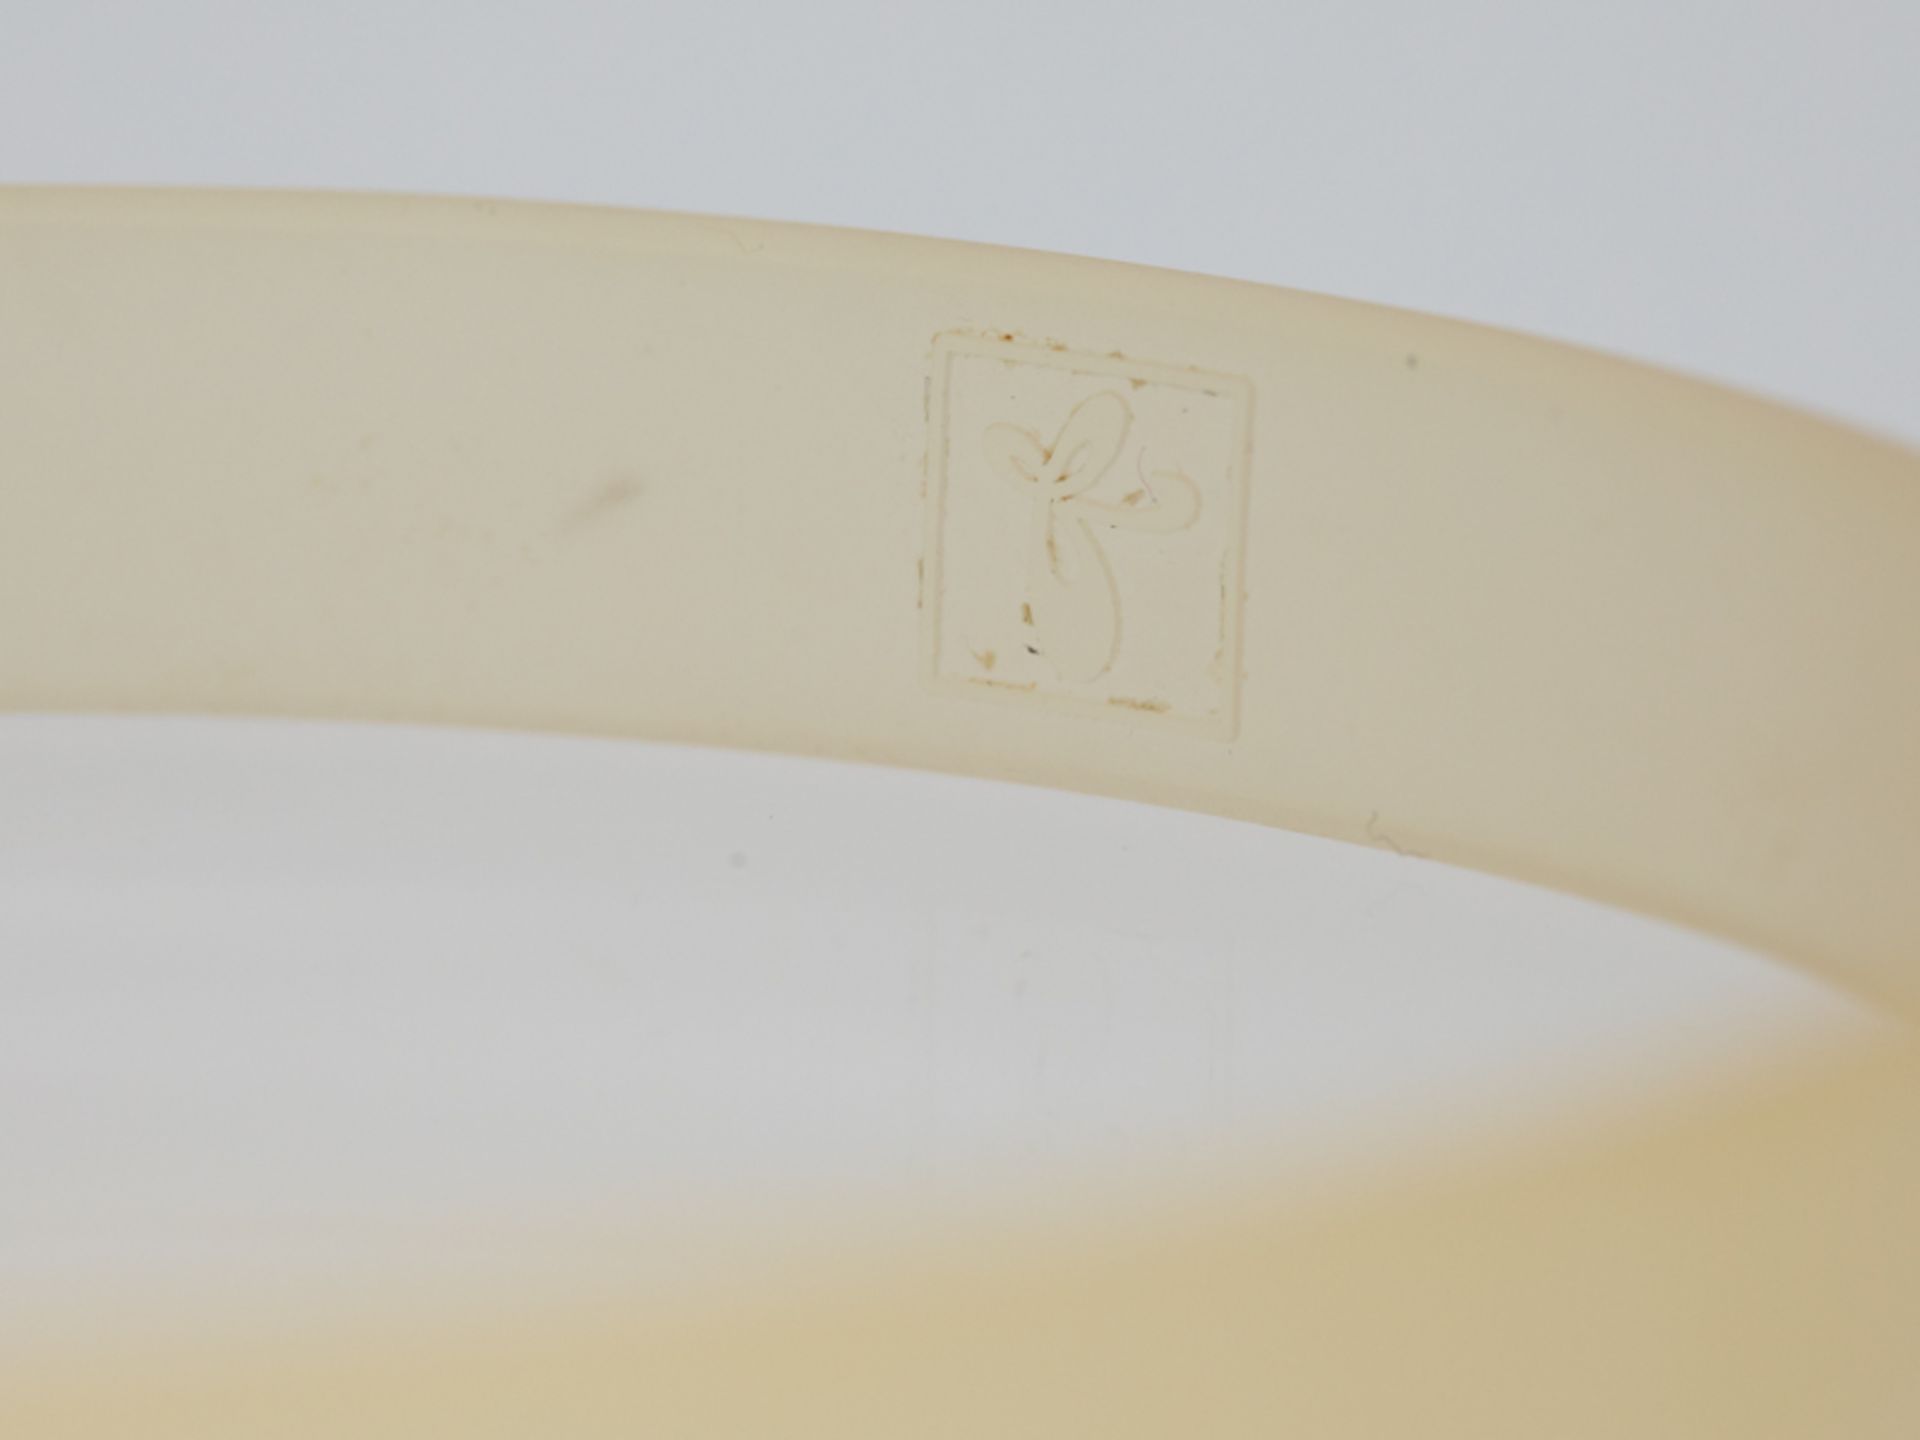 Armband aus Kautschuk mit goldener Schließe und 14 kleinen Brillanten, zus. ca. 0,14 ct, bez. Alessa - Image 6 of 7